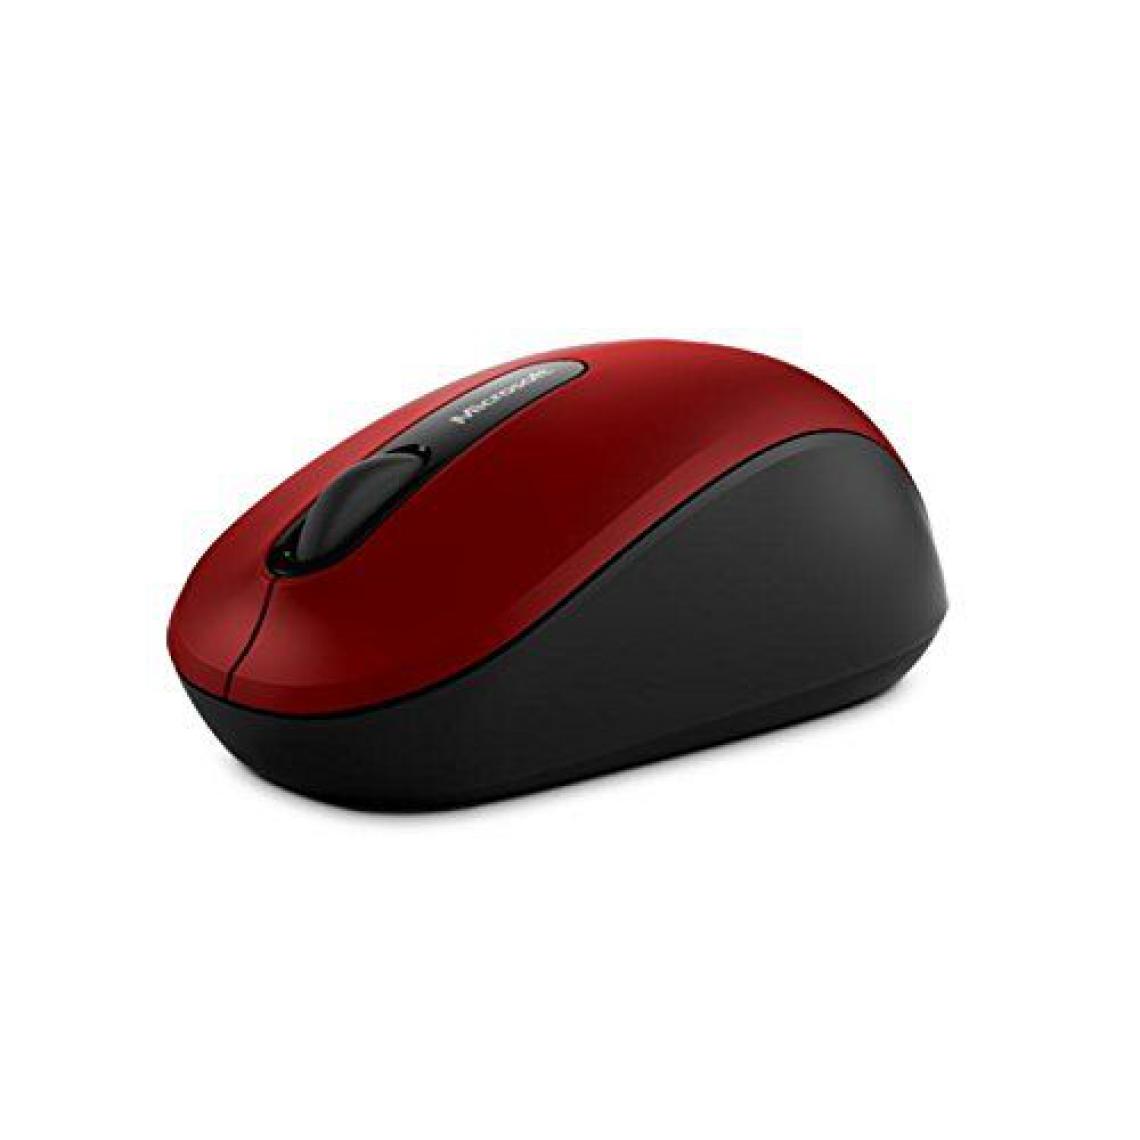 Microsoft - Microsoft Bluetooth Mobile Mouse 3600 Souris BlueTrack Ambidextre Noir, Rouge - Souris (Ambidextre, BlueTrack, Bluetooth, 63 g, Noir, Rouge) - Souris